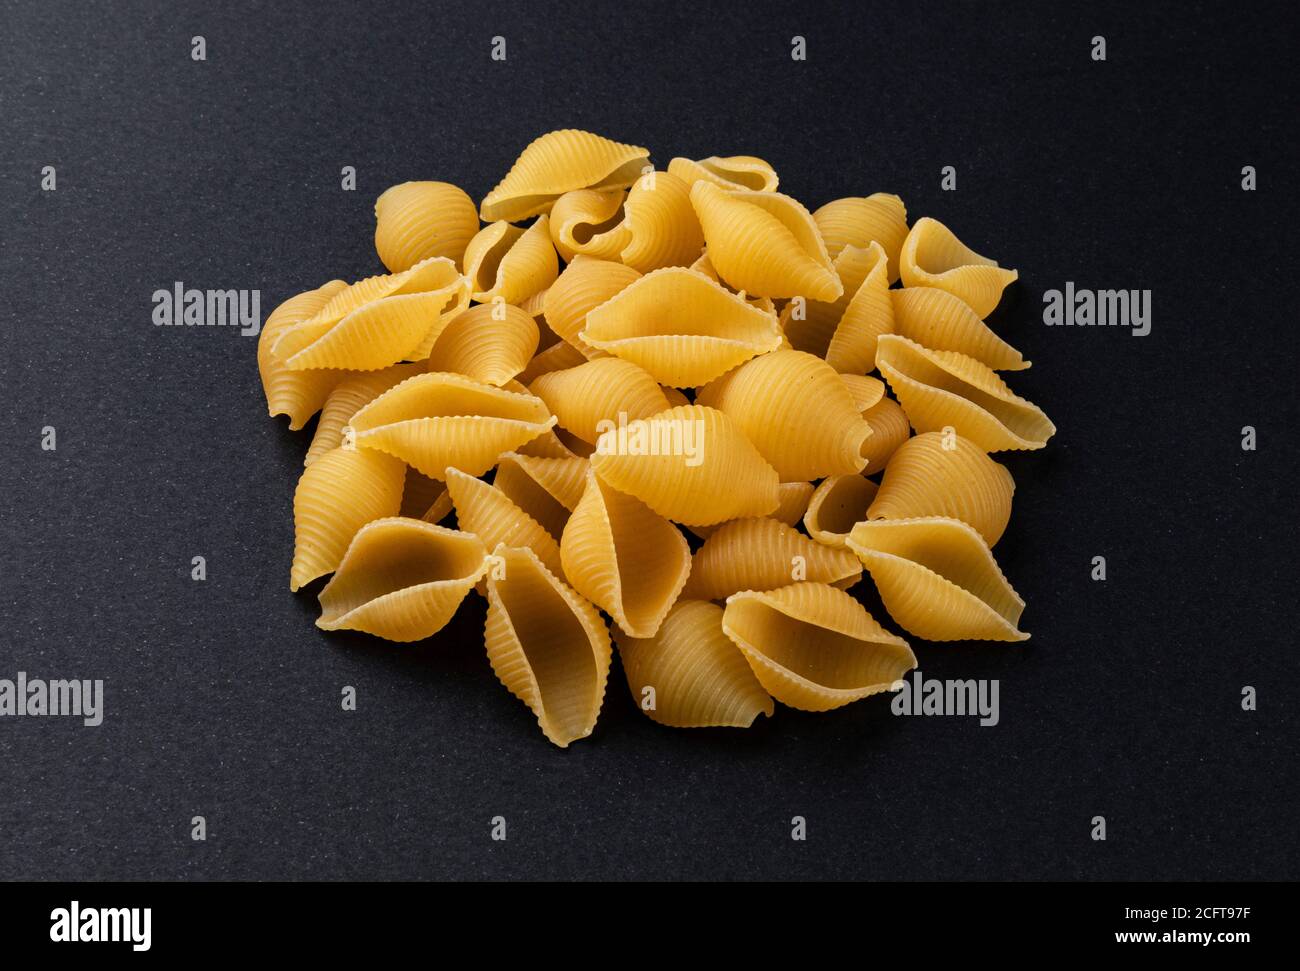 Conchiglie rigate. Roh gestreifte Muschel Pasta auf schwarzem Hintergrund Stockfoto